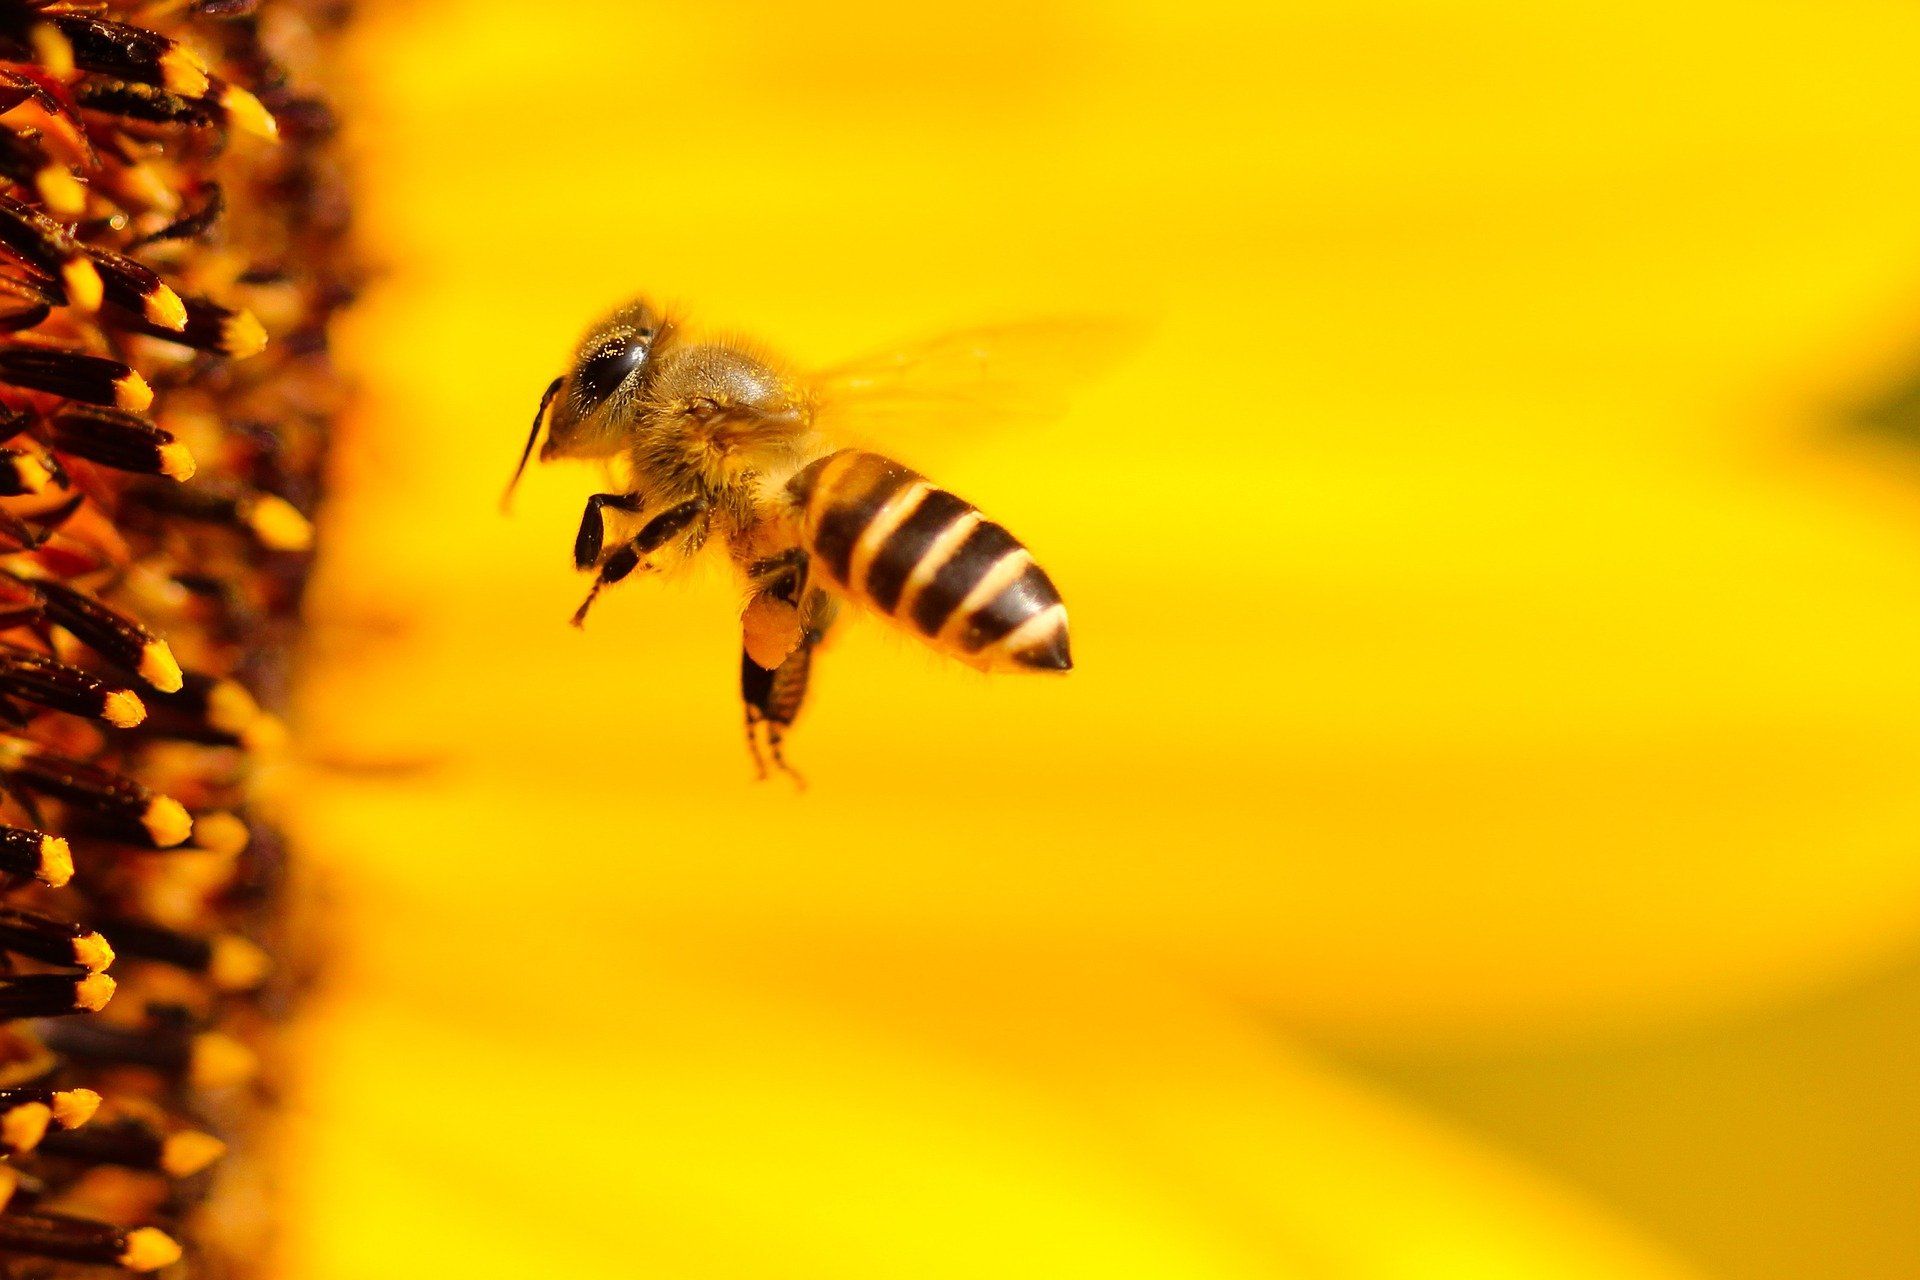 El declive de los abejas y otros polinizadores puede comprometer la seguridad alimentaria y la conservación de muchos ecosistemas / Foto: Hans Benn - Pixabay